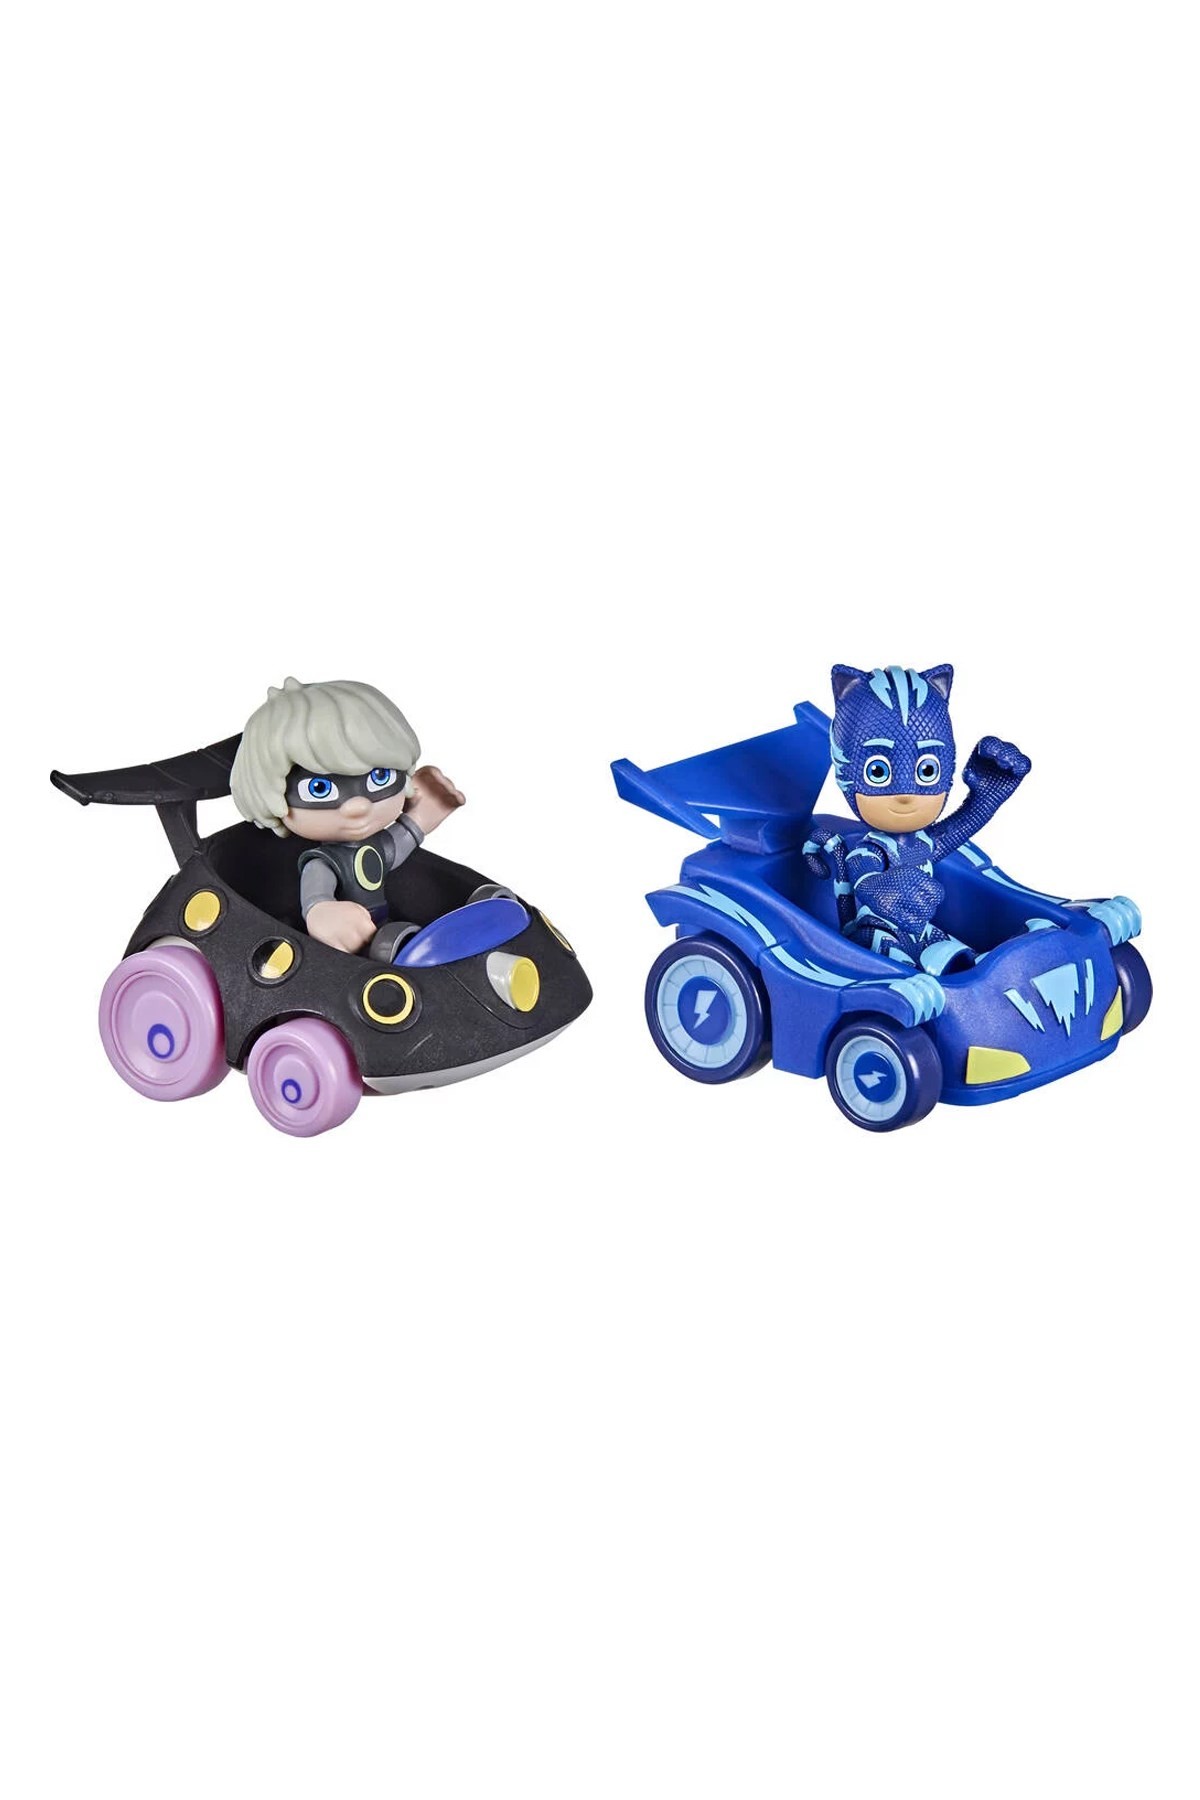 PJ Maskeliler 2'li Figür ve Araç Seti Mavi/Siyah